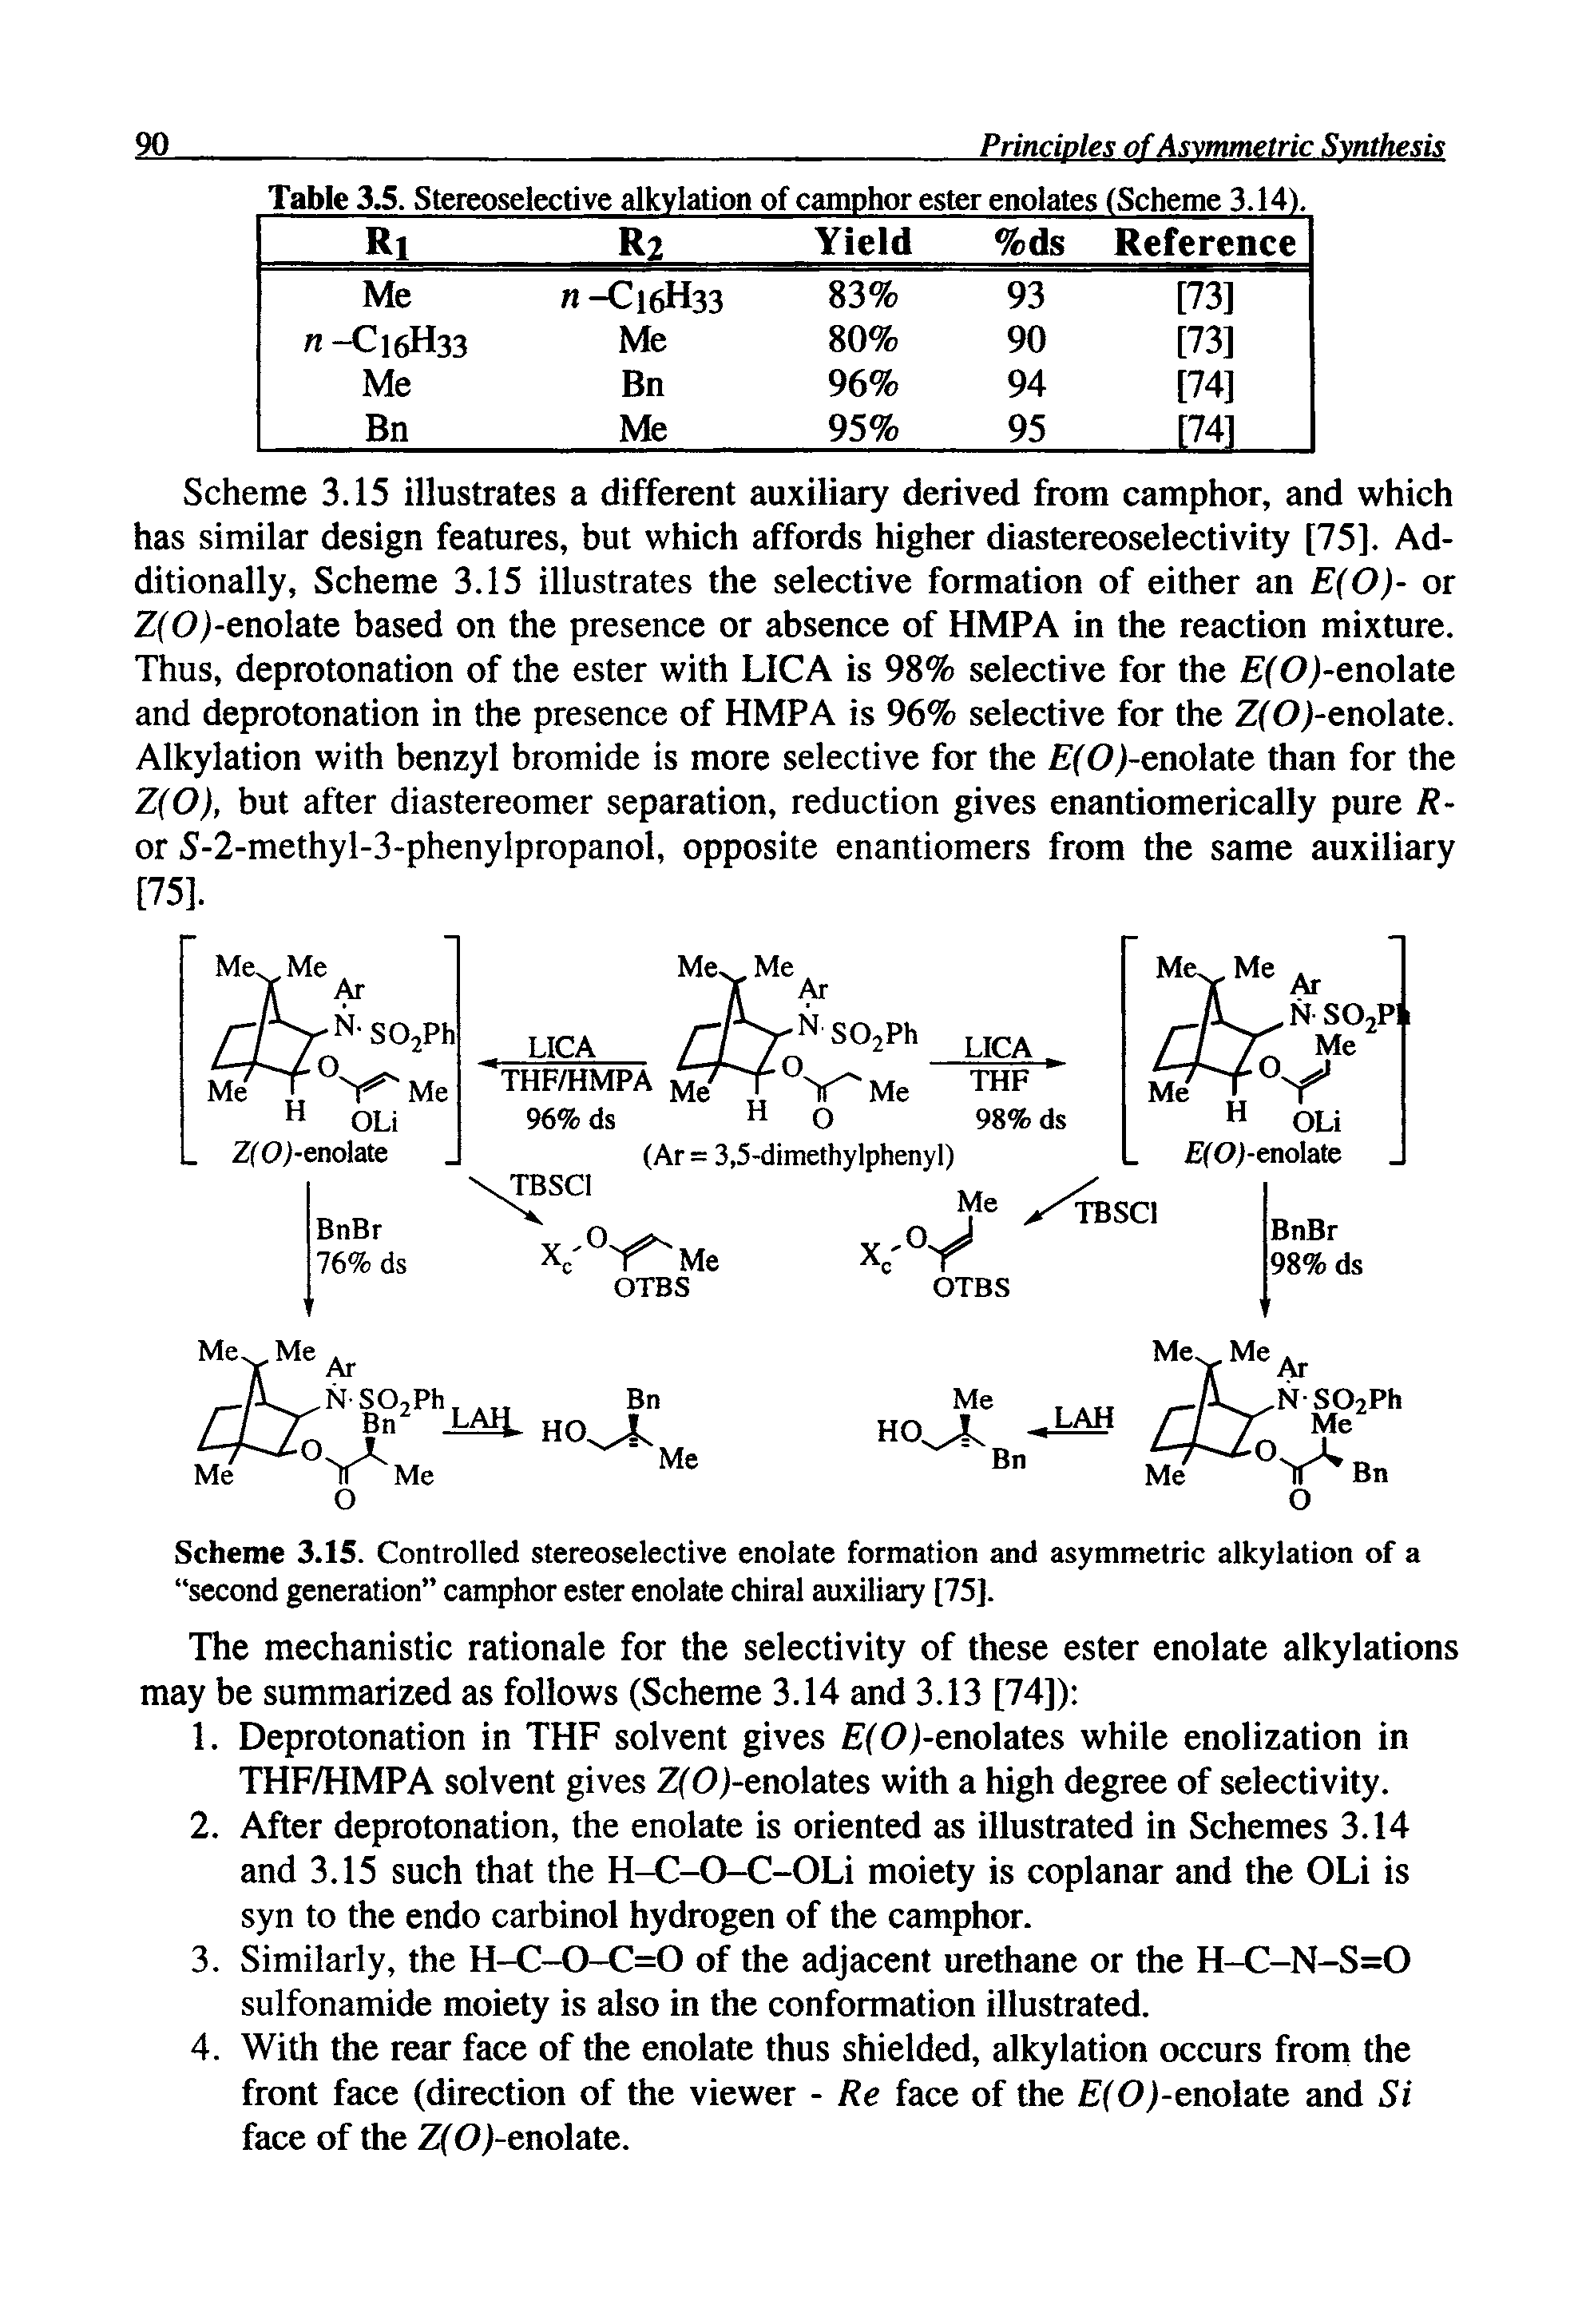 Table 3.5. Stereoselective alkylation of camphor ester enolates (Scheme 3.14).